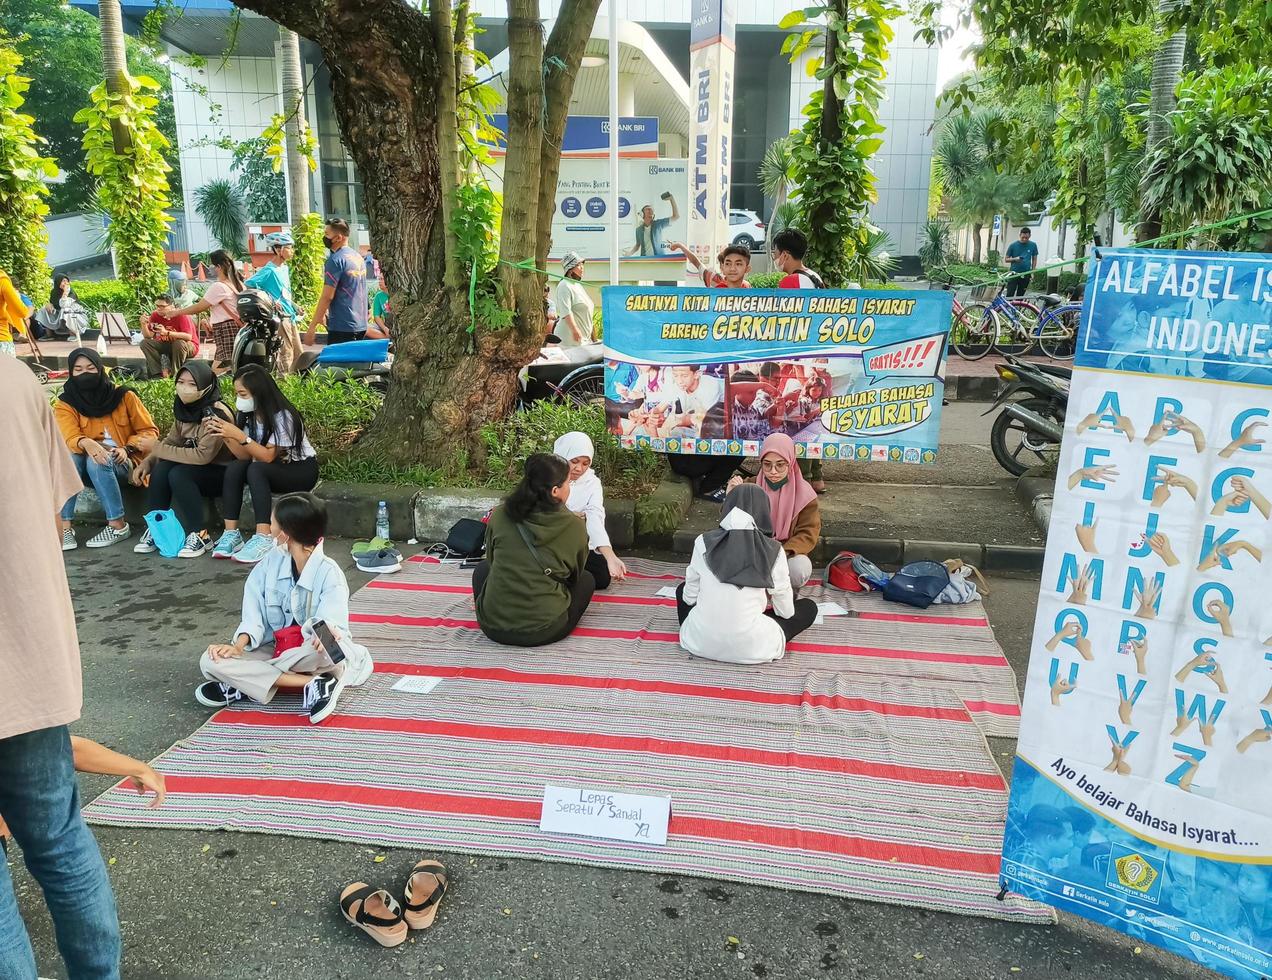 sukoharjo - 7. juni 2022 - menschen mit behinderungen sitzen auf matten und unterrichten fußgänger in gebärdensprache foto